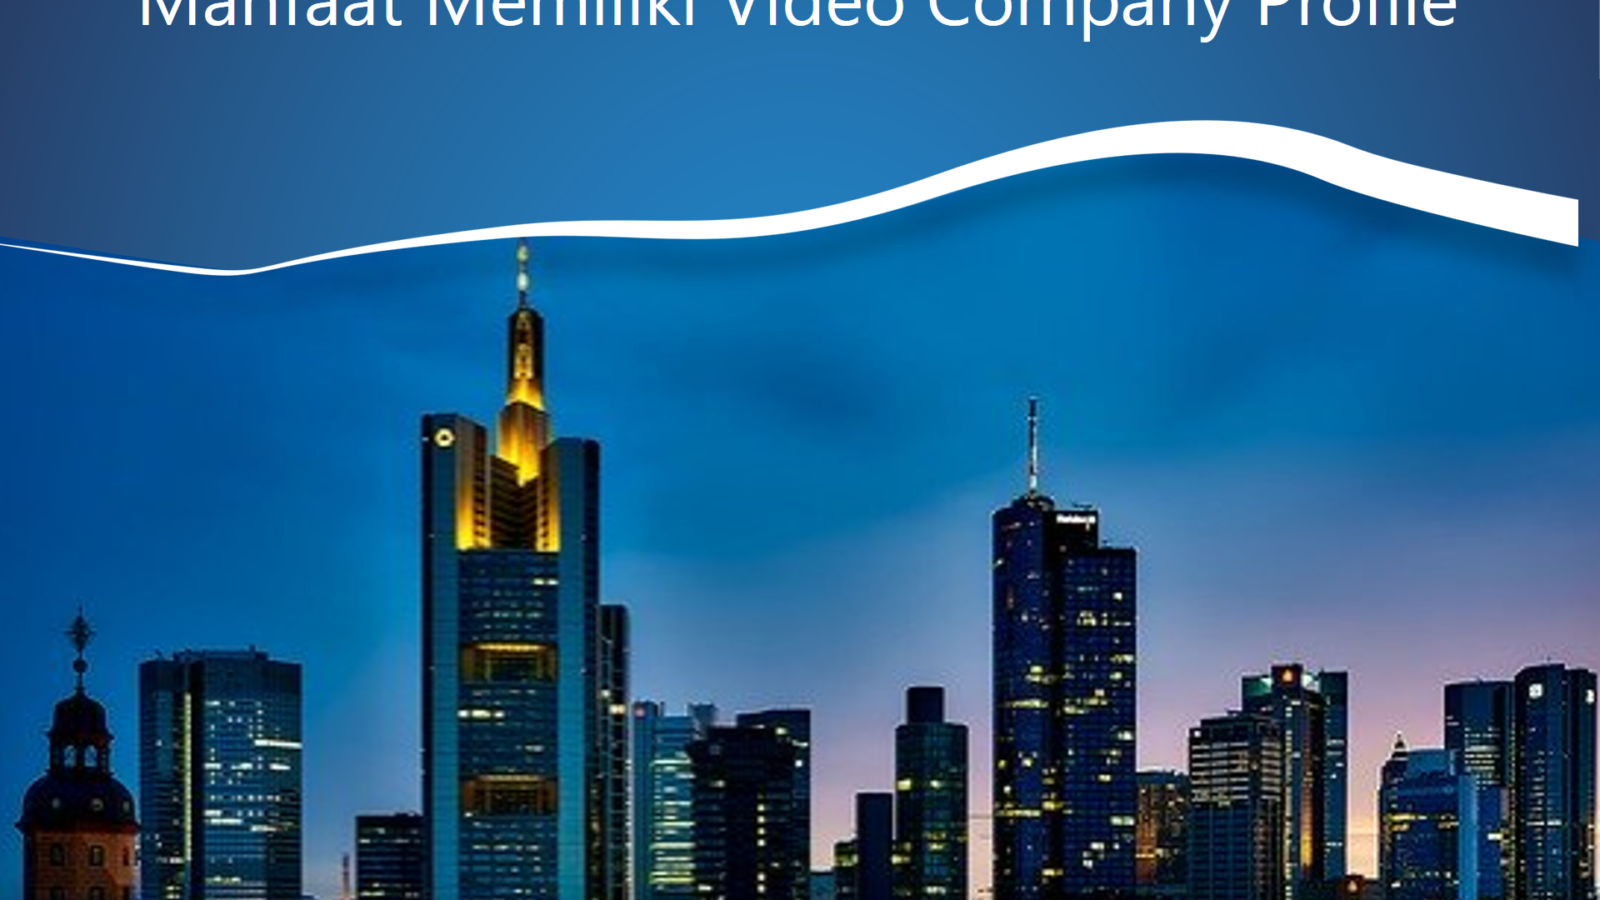 Manfaat Miliki Video Company Profile Perusahaan